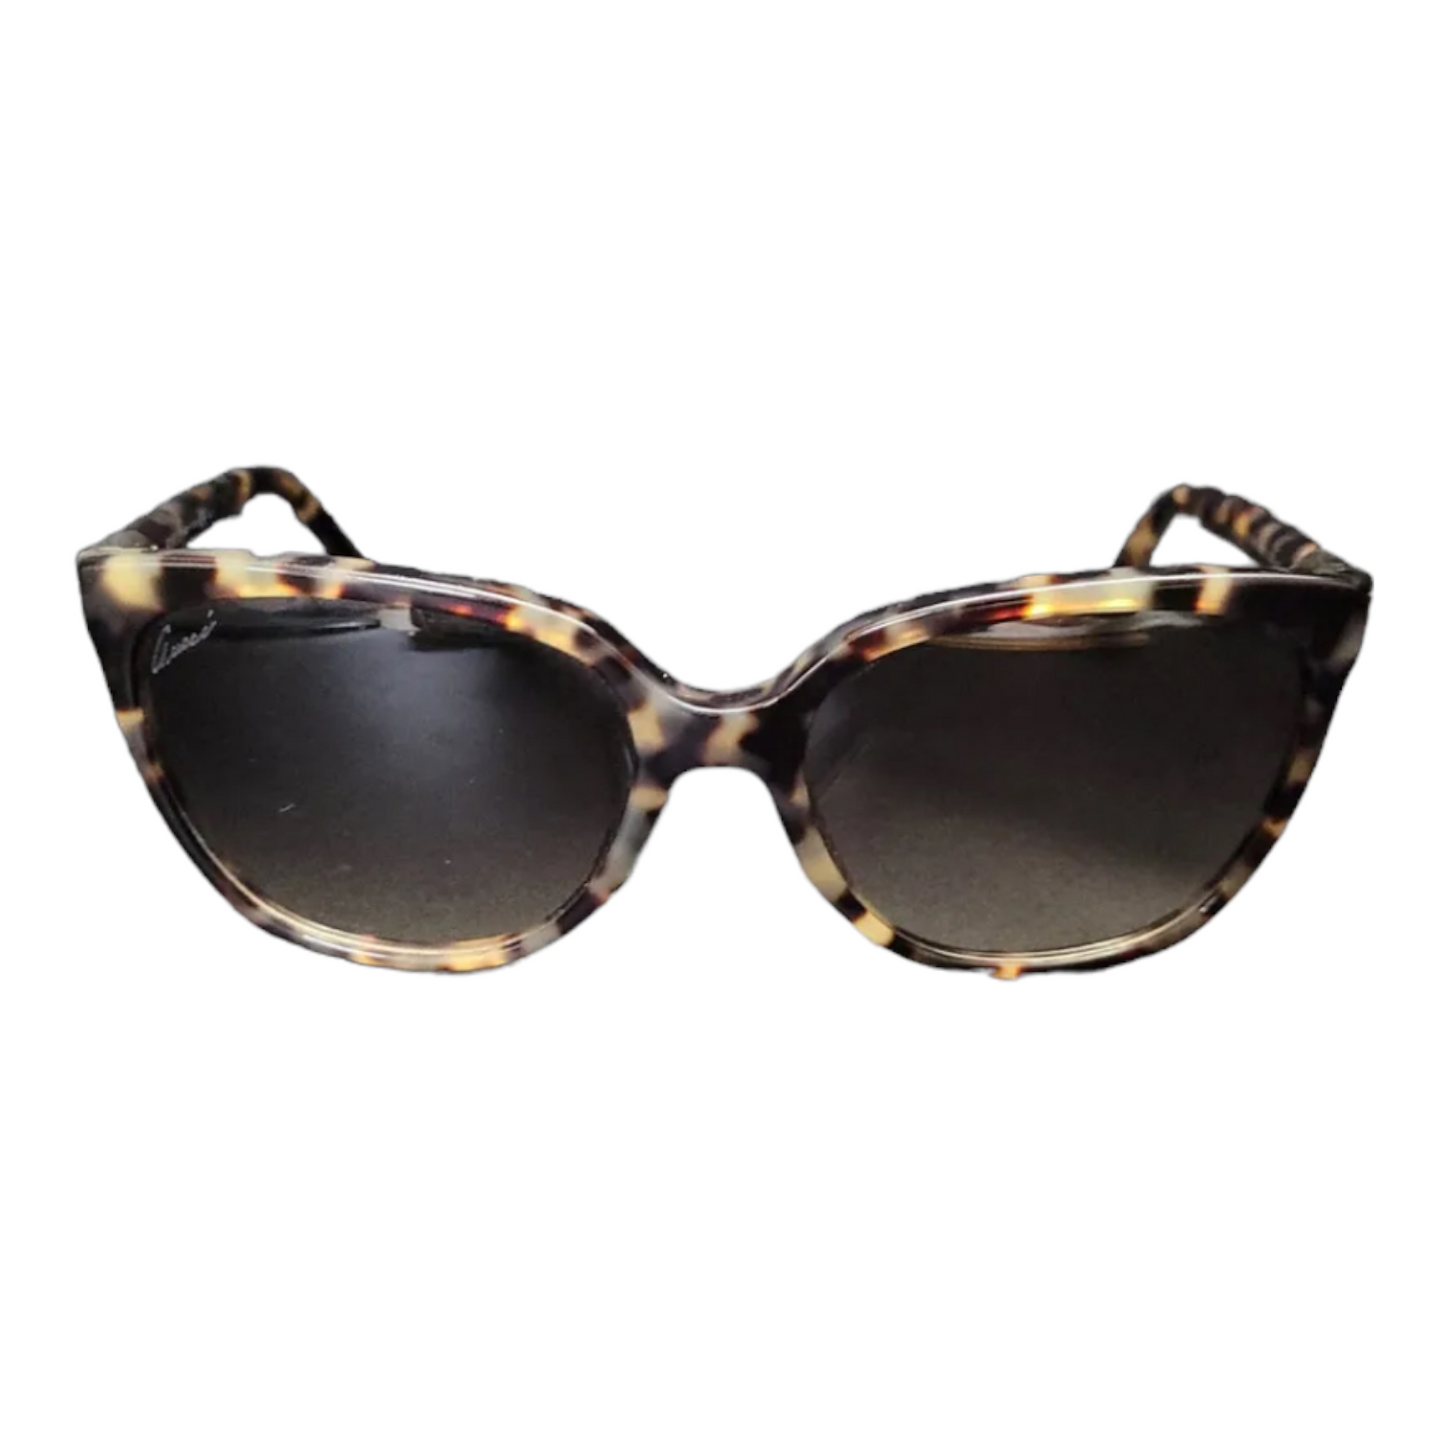 Gucci sunglasses tortoise 3502/5 4gxed